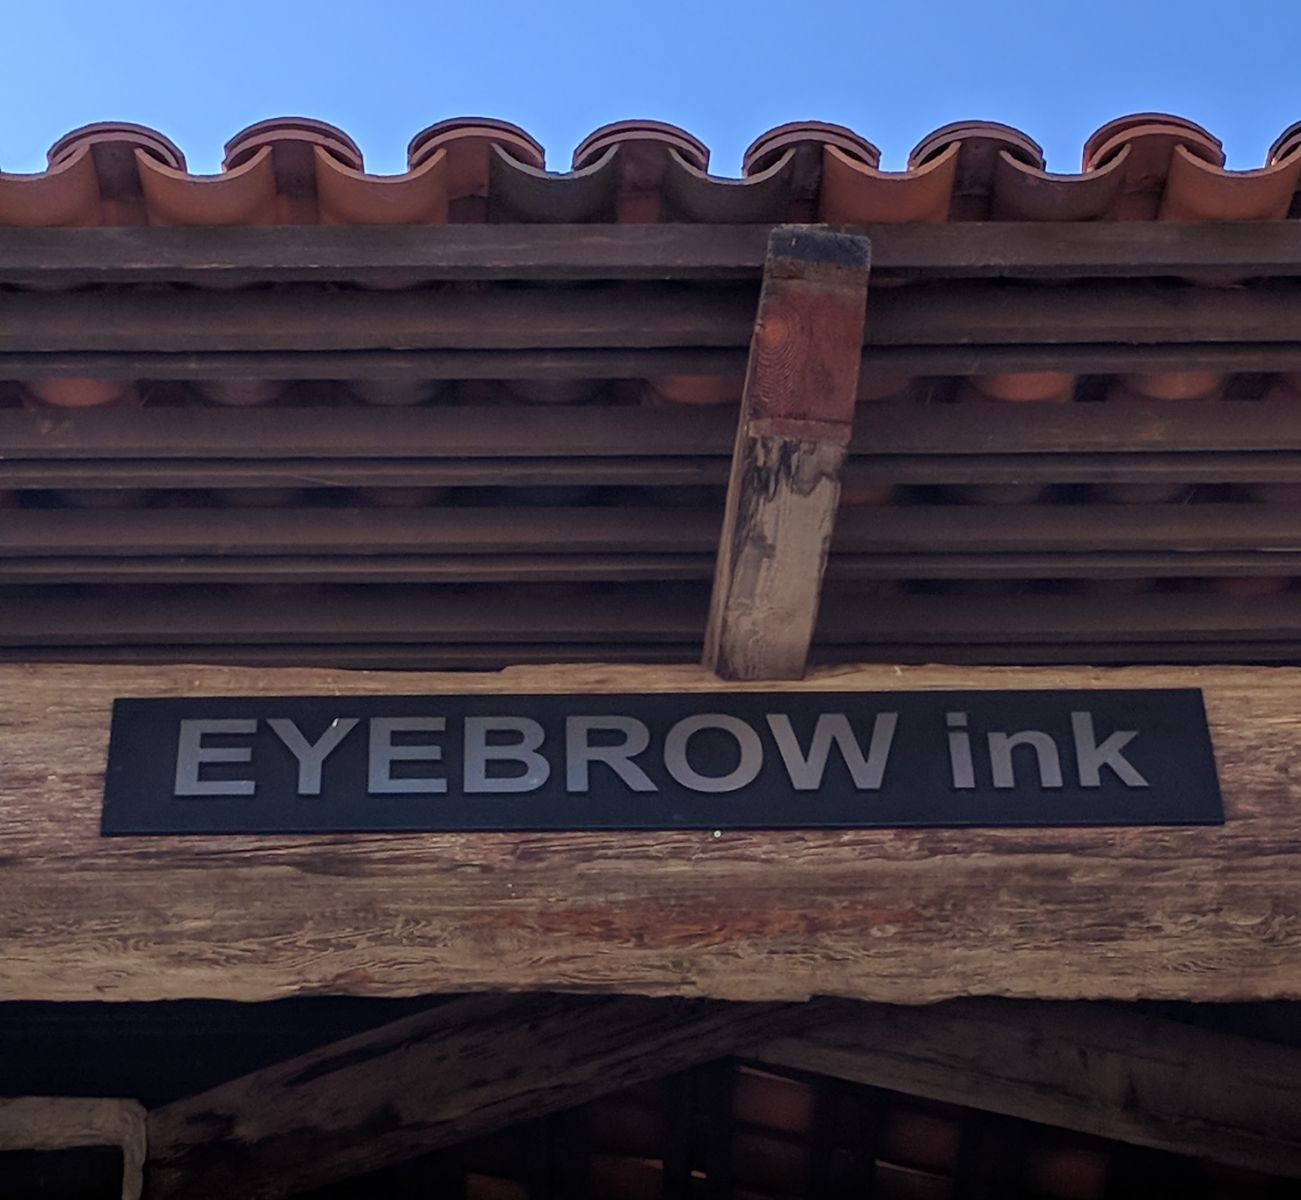 Eyebrow ink